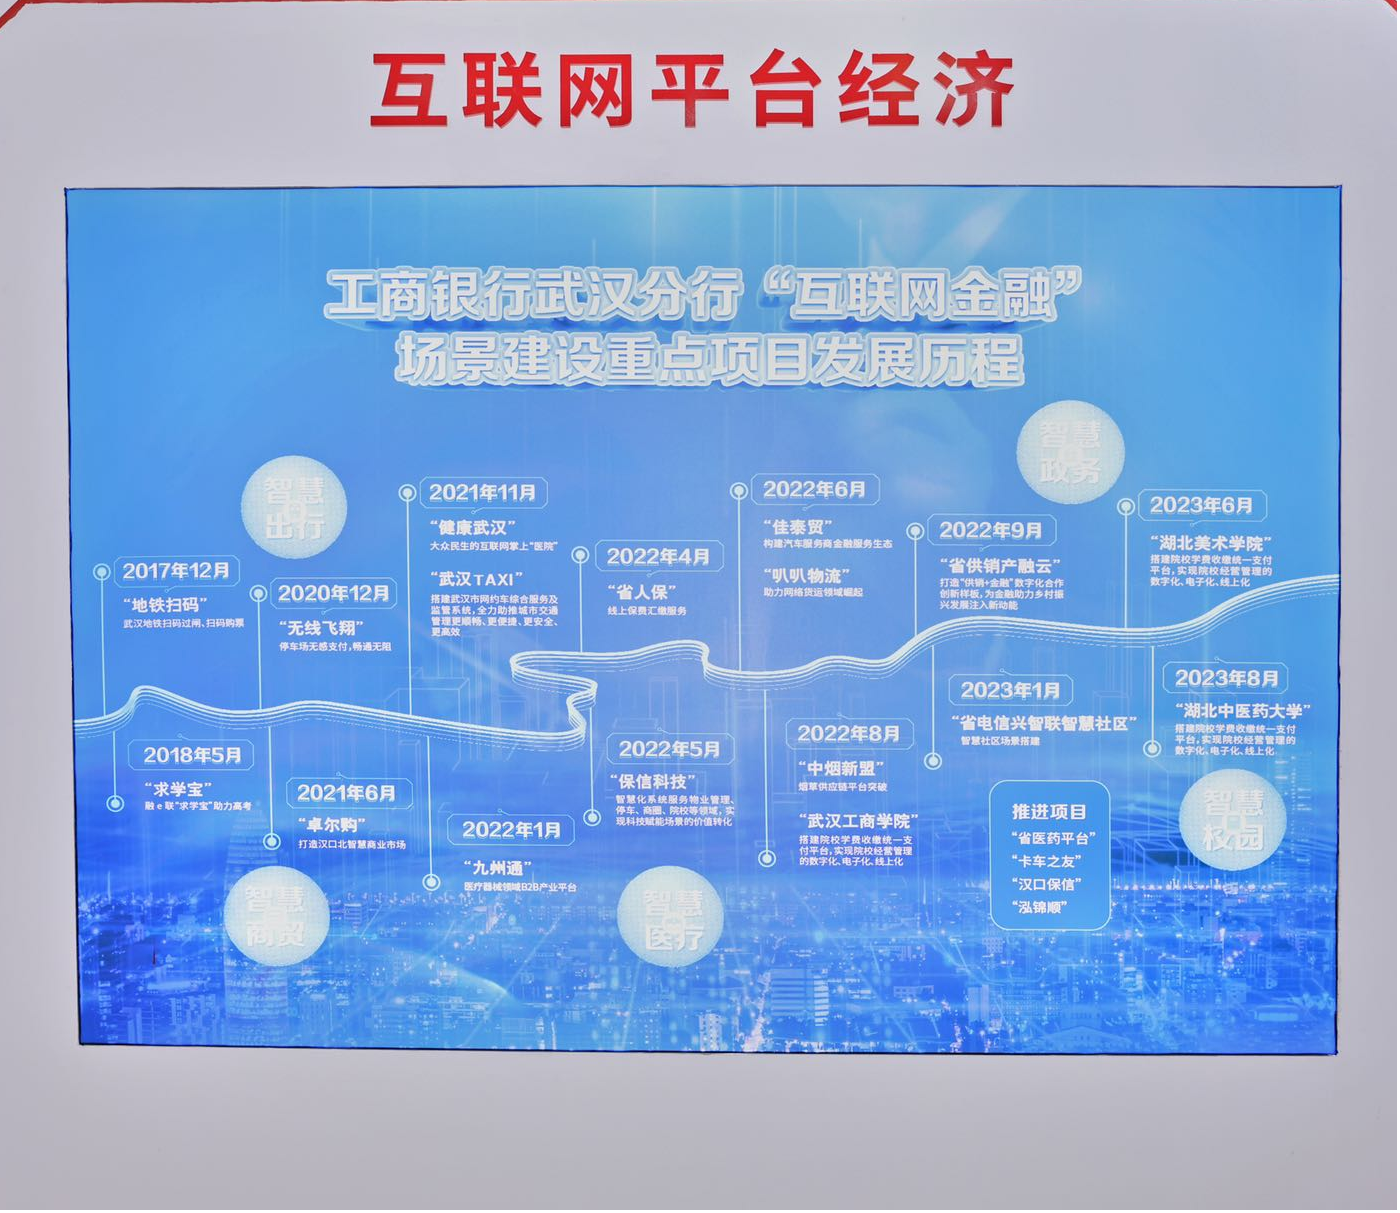 工行金融创新成果精彩亮相第八届武汉电博会